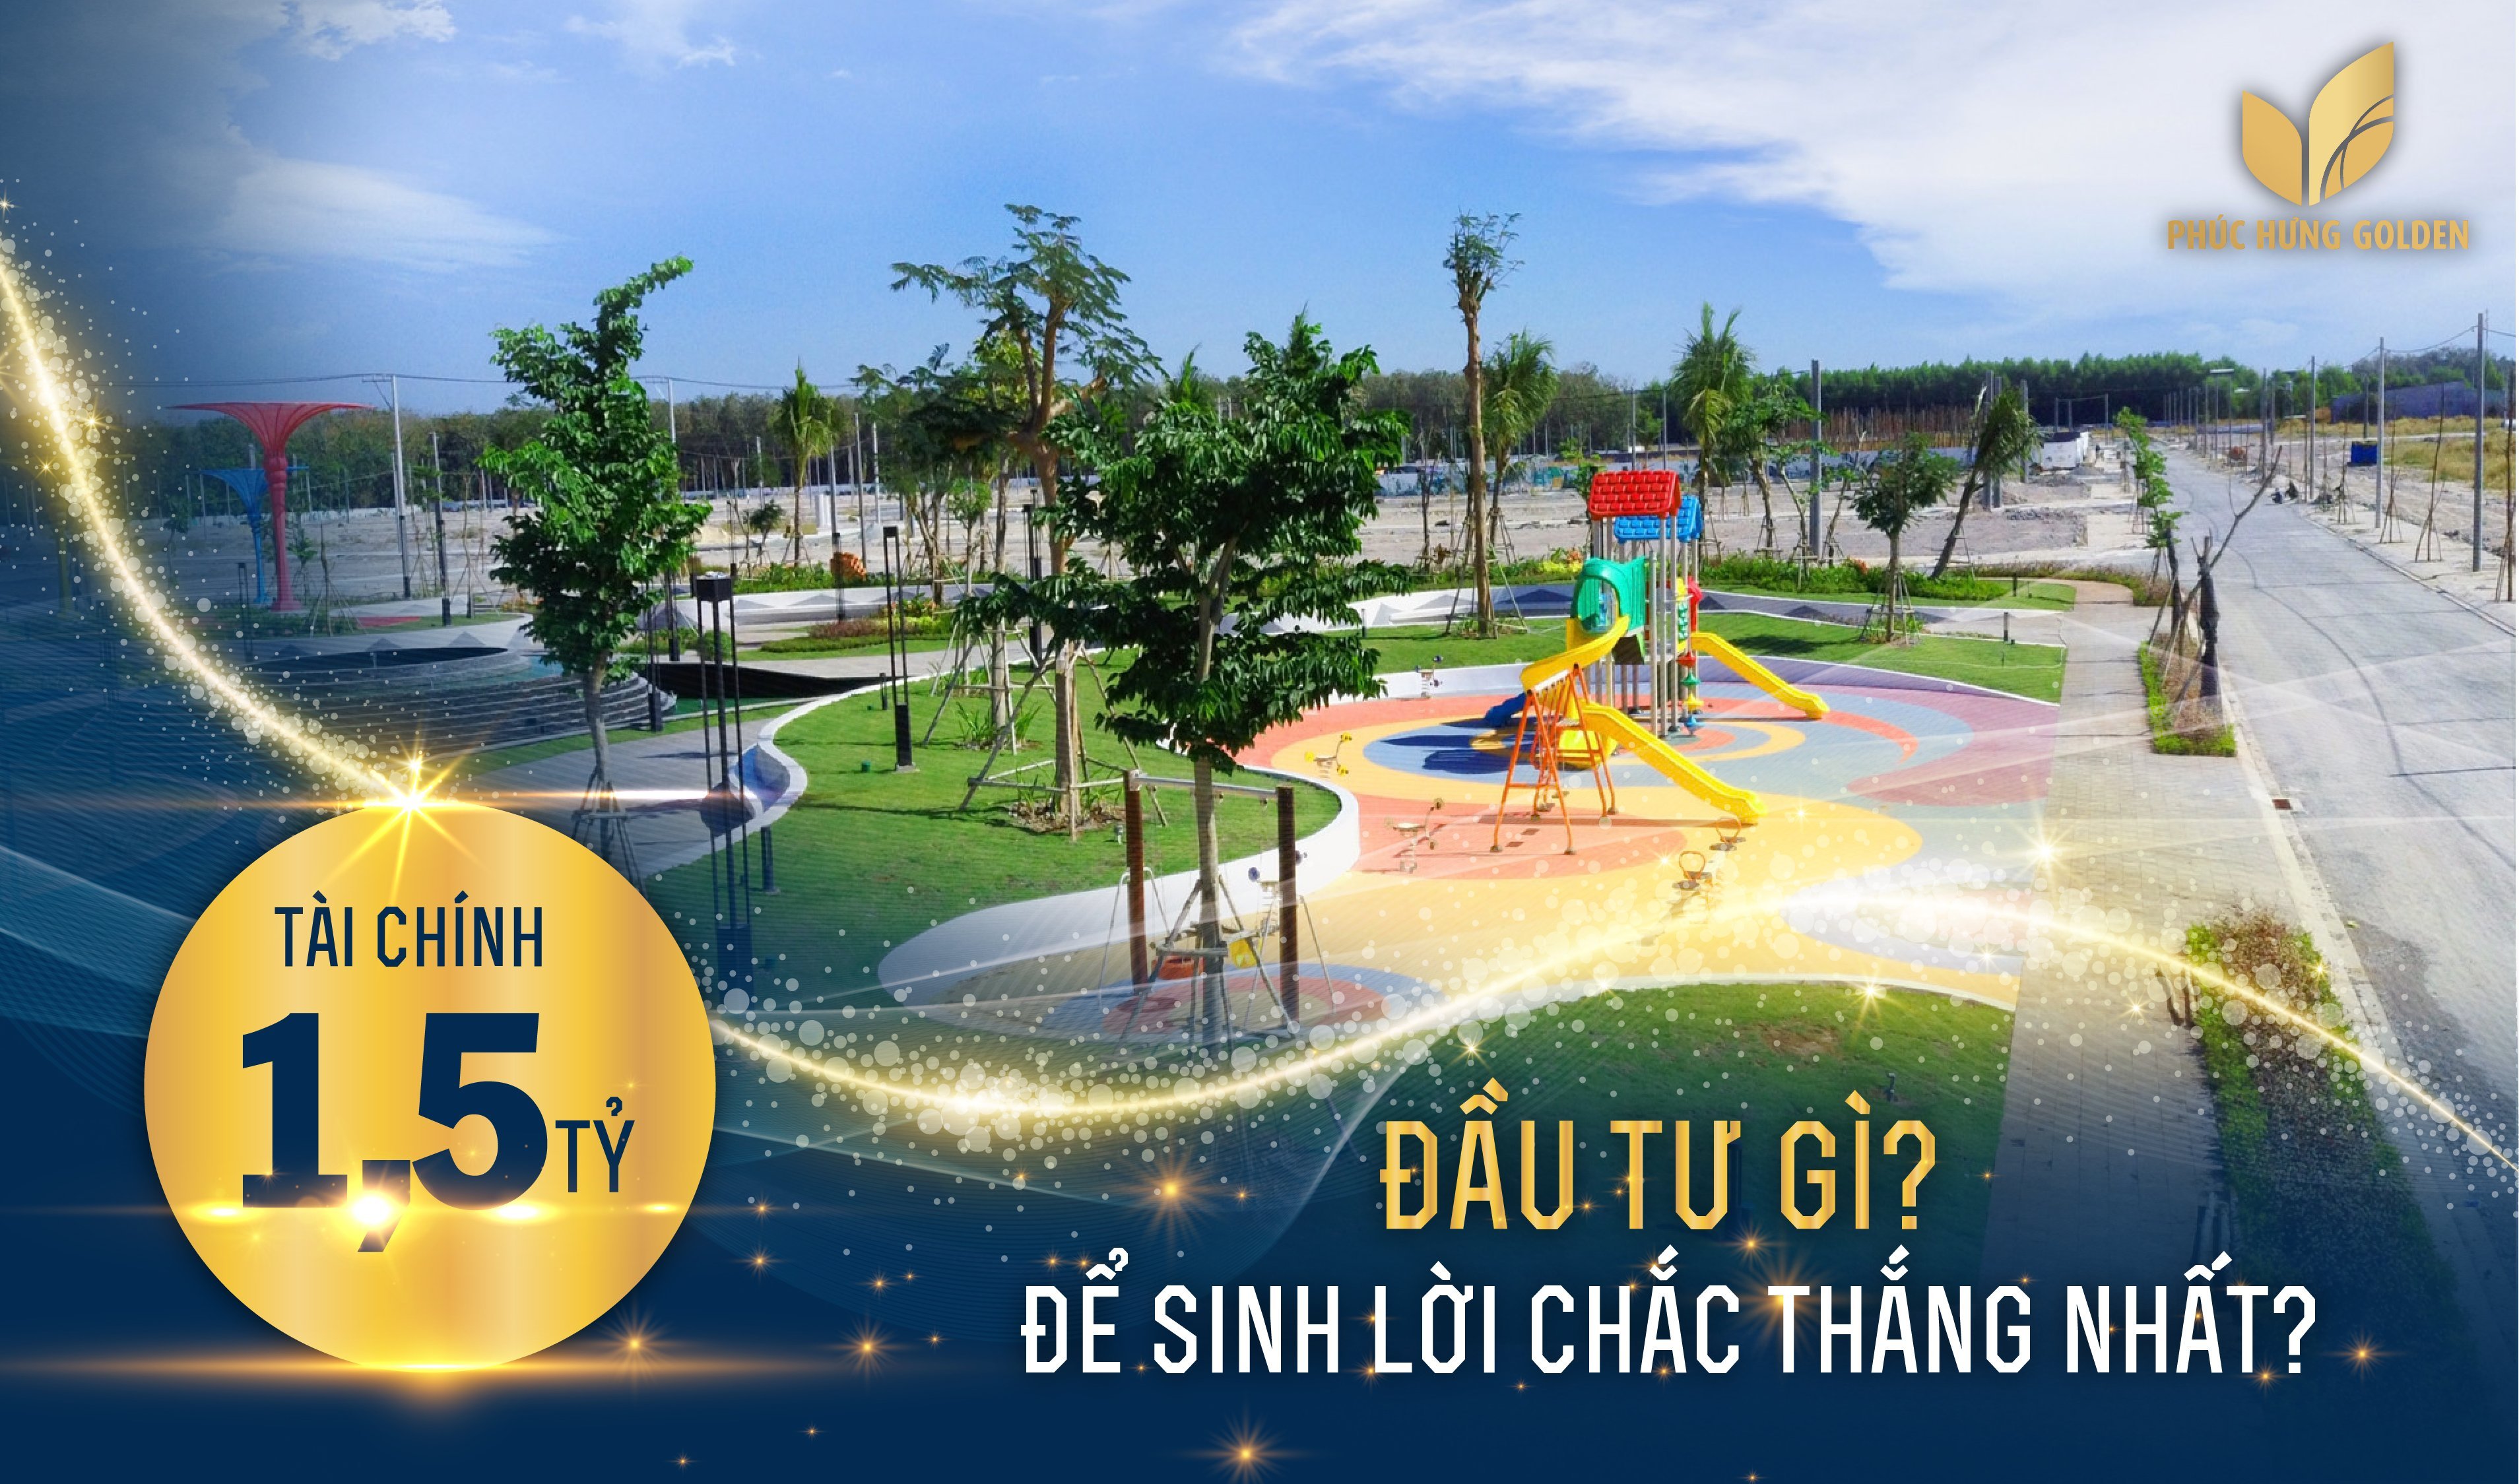 Phức Hưng Golden - Tâm điểm của thủ phủ công nghiệp tại Bình Phước